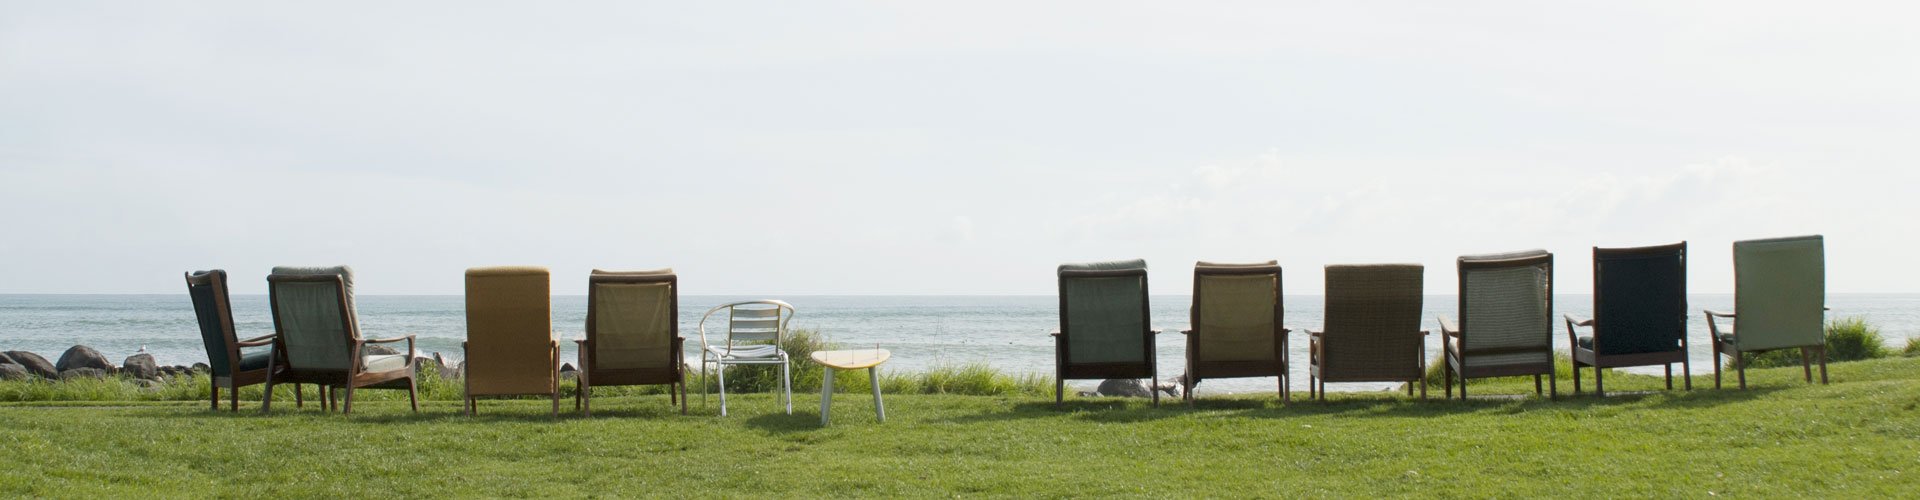 Auf einer Wiese vor dem Meer sind mehrere Sessel in einer Reihe aufgestellt. Wenn man sich hineinsetzen würde, hätte man einen Blick auf das Meer.